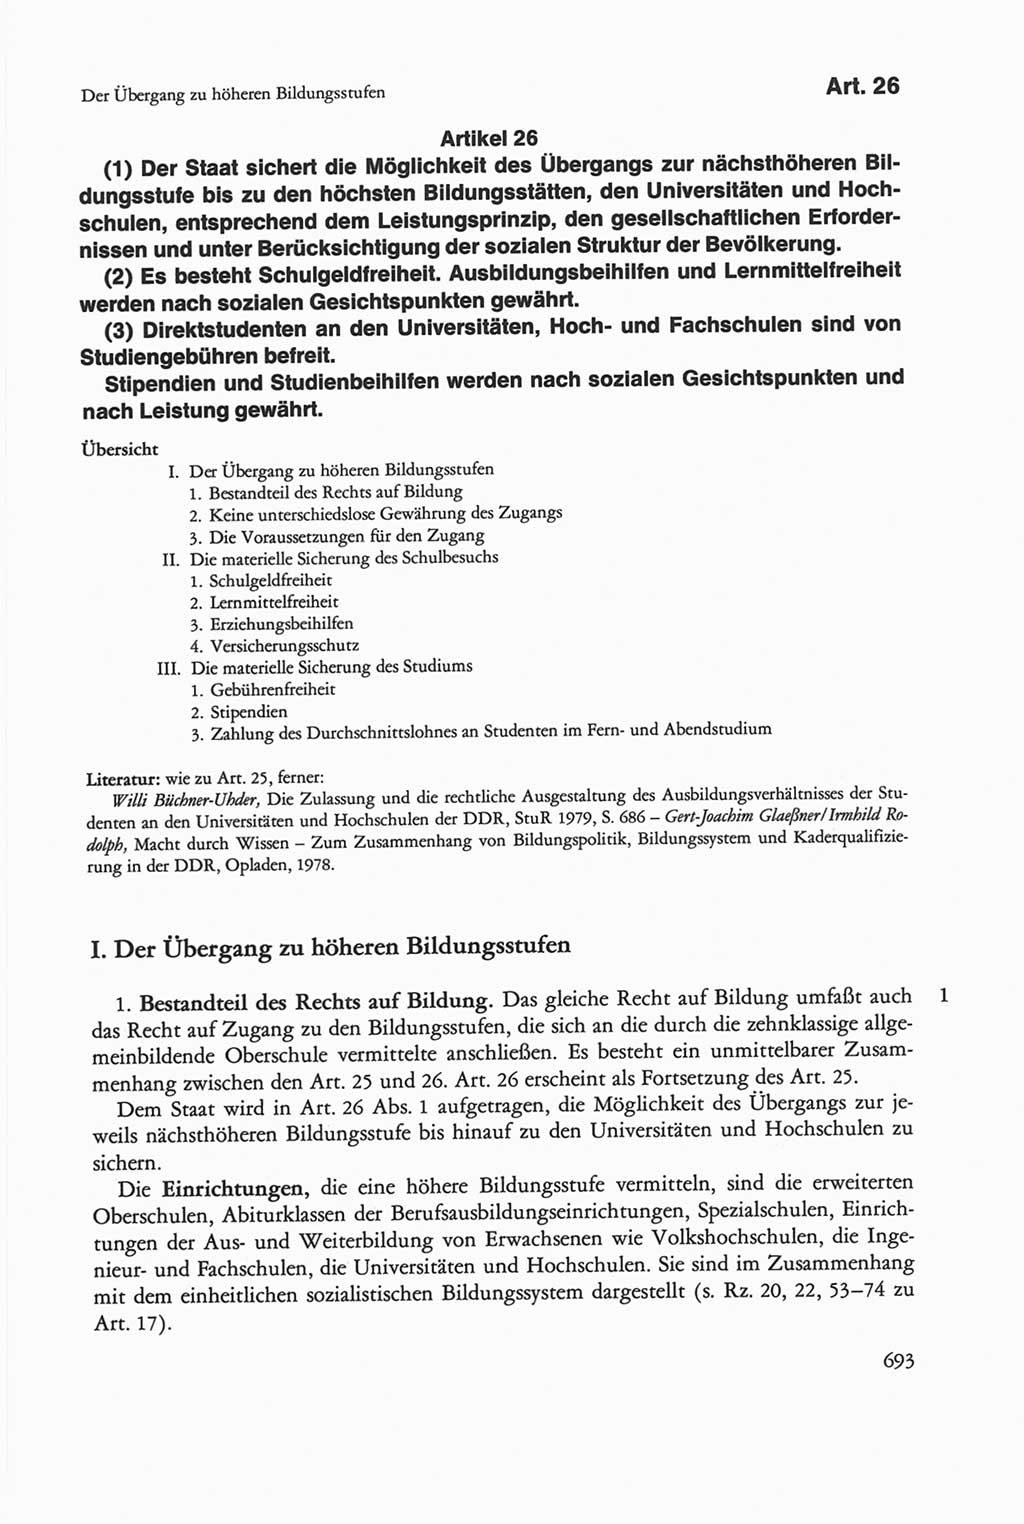 Die sozialistische Verfassung der Deutschen Demokratischen Republik (DDR), Kommentar 1982, Seite 693 (Soz. Verf. DDR Komm. 1982, S. 693)